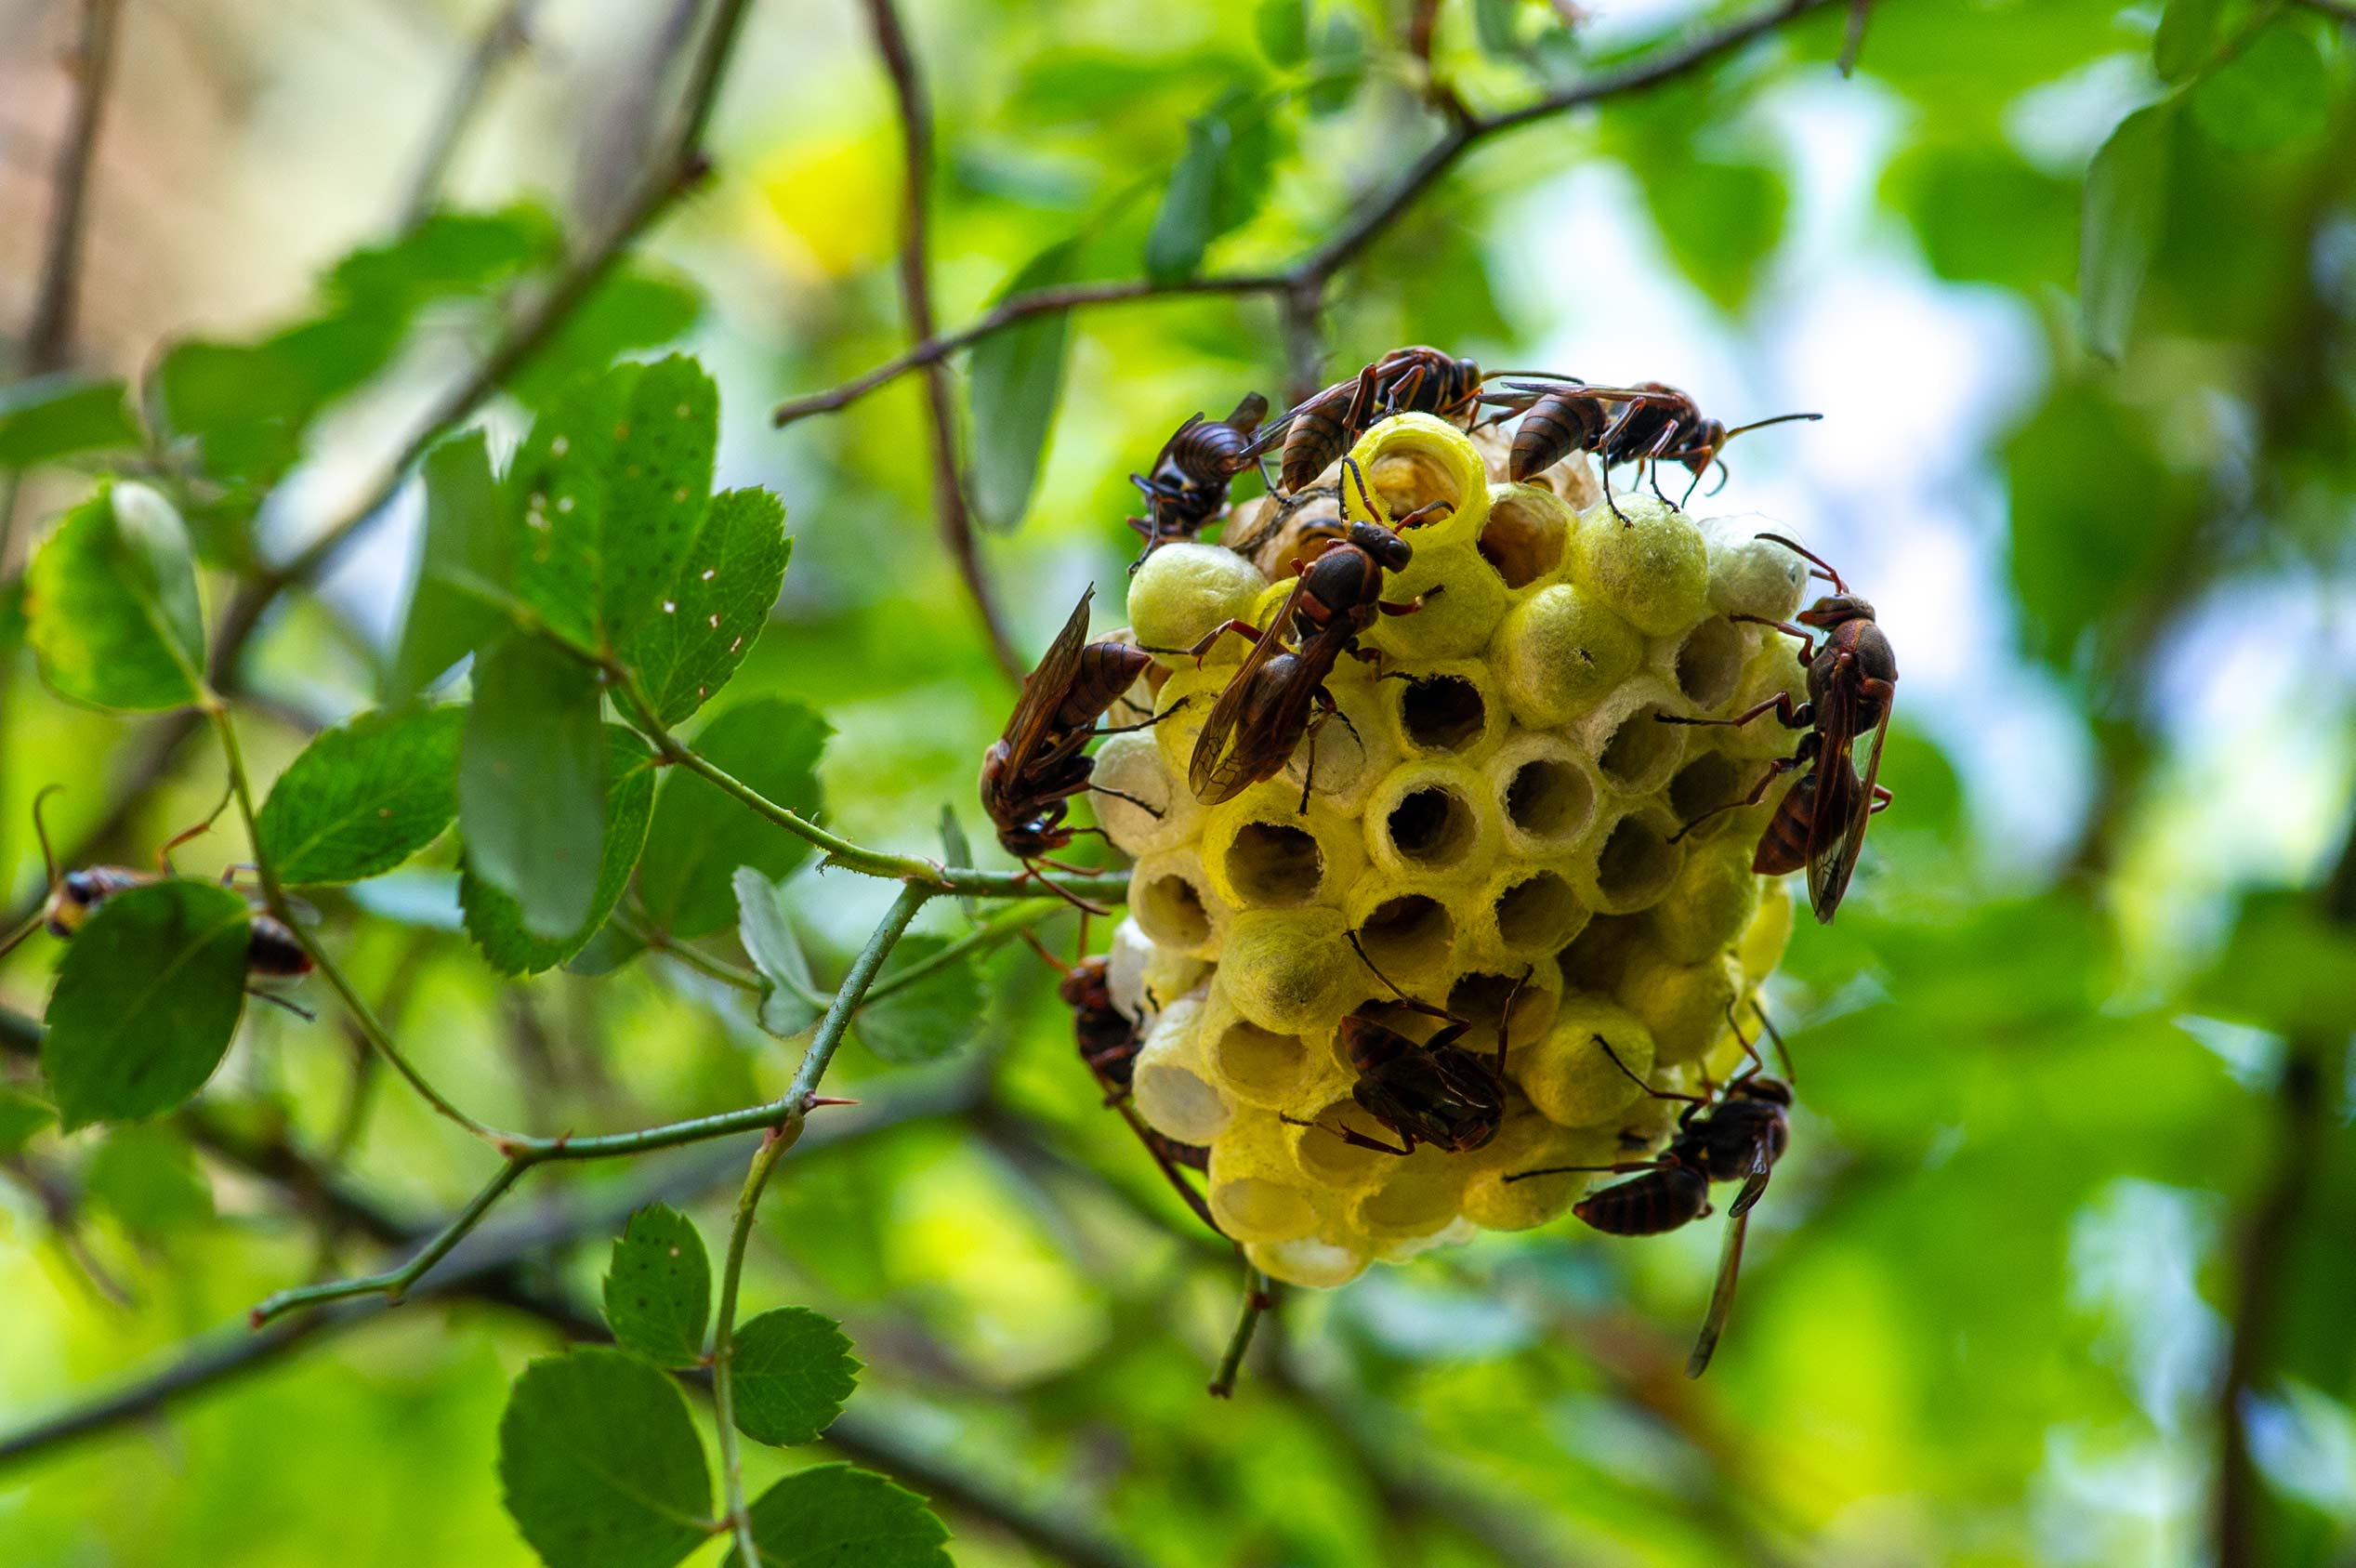 キボシアシナガバチの巣やオスの紹介 | 虫の写真と生態なら昆虫写真 